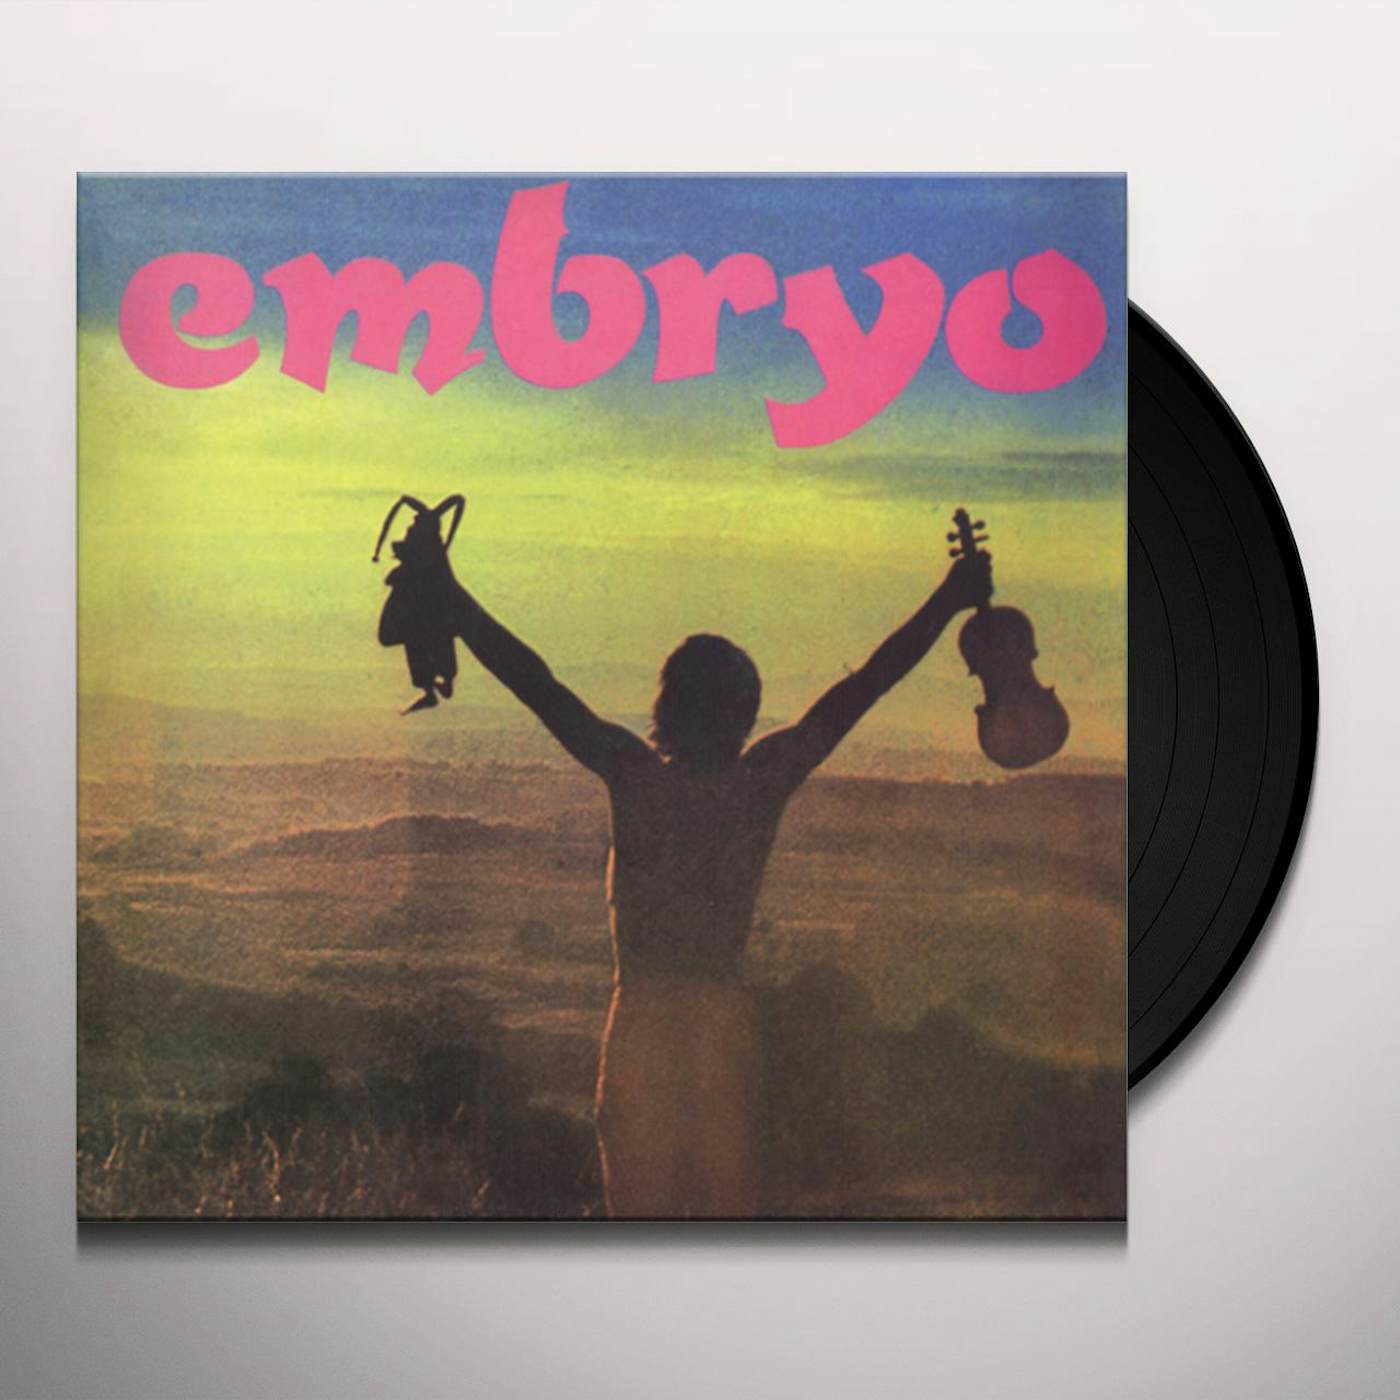 Embryo's Rache Vinyl Record